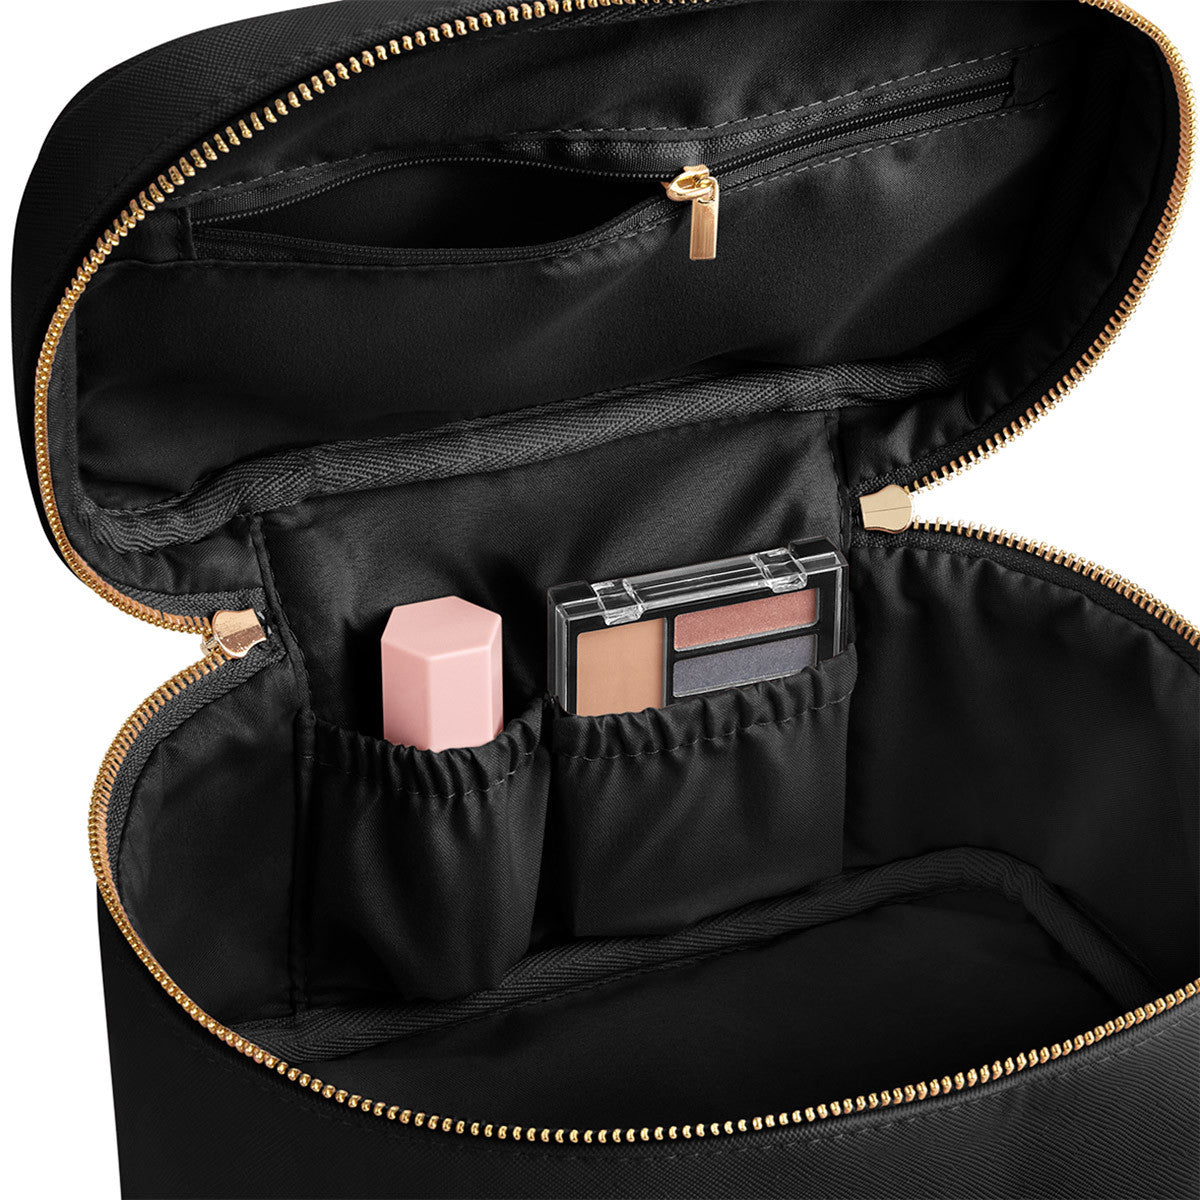 Beauty Kosmetiktasche Koffer Case in 4 Farben